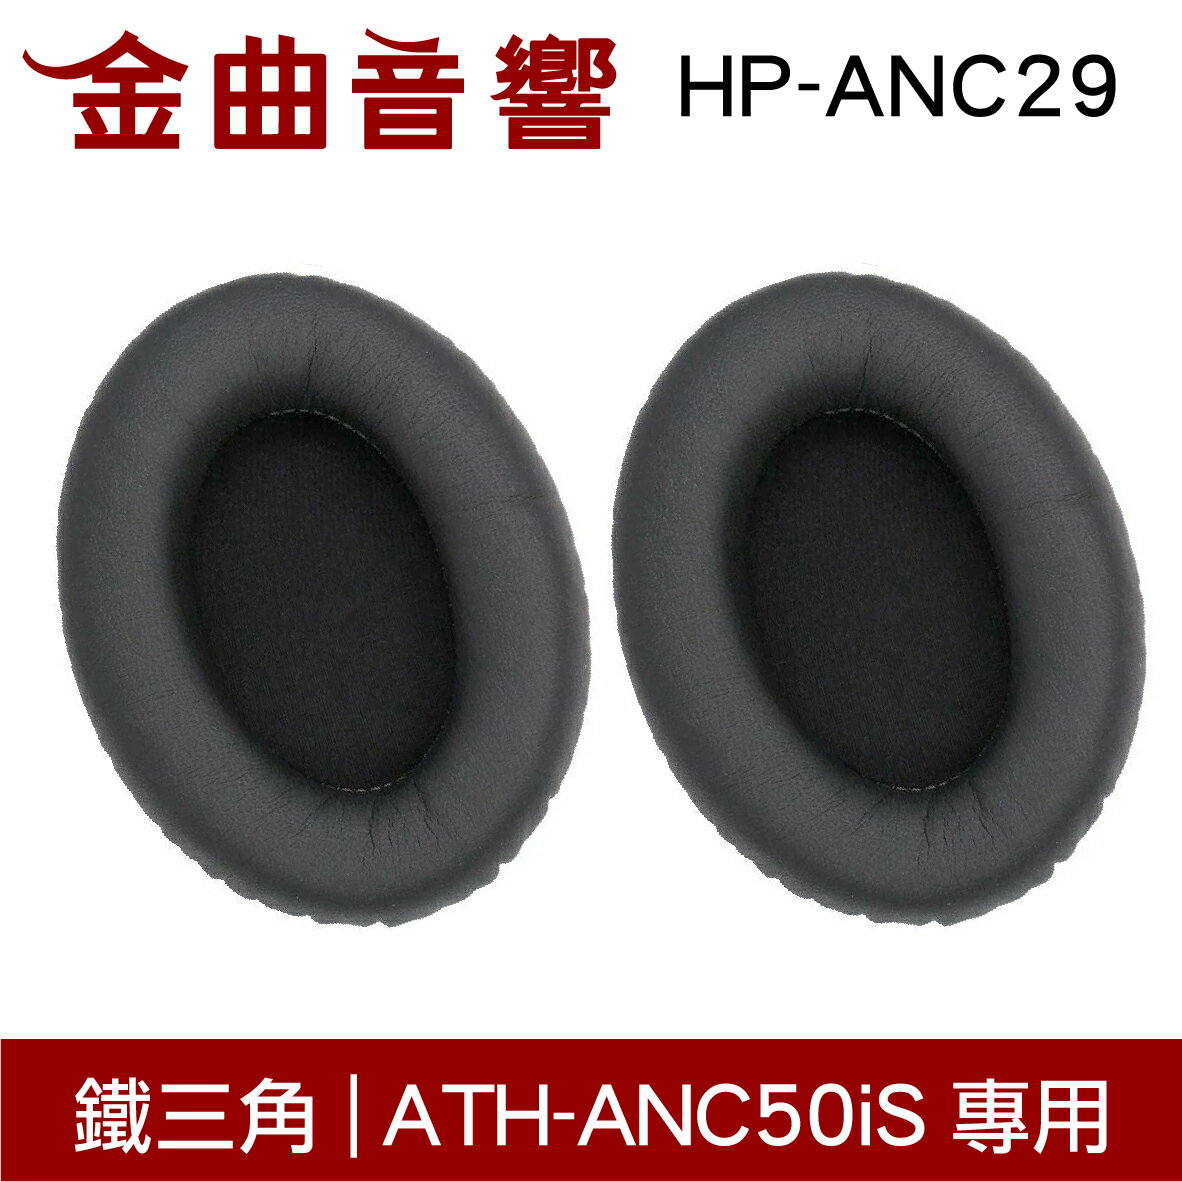 鐵三角 HP-ANC29 替換耳罩 一對 ATH-ANC50iS 專用 | 金曲音響